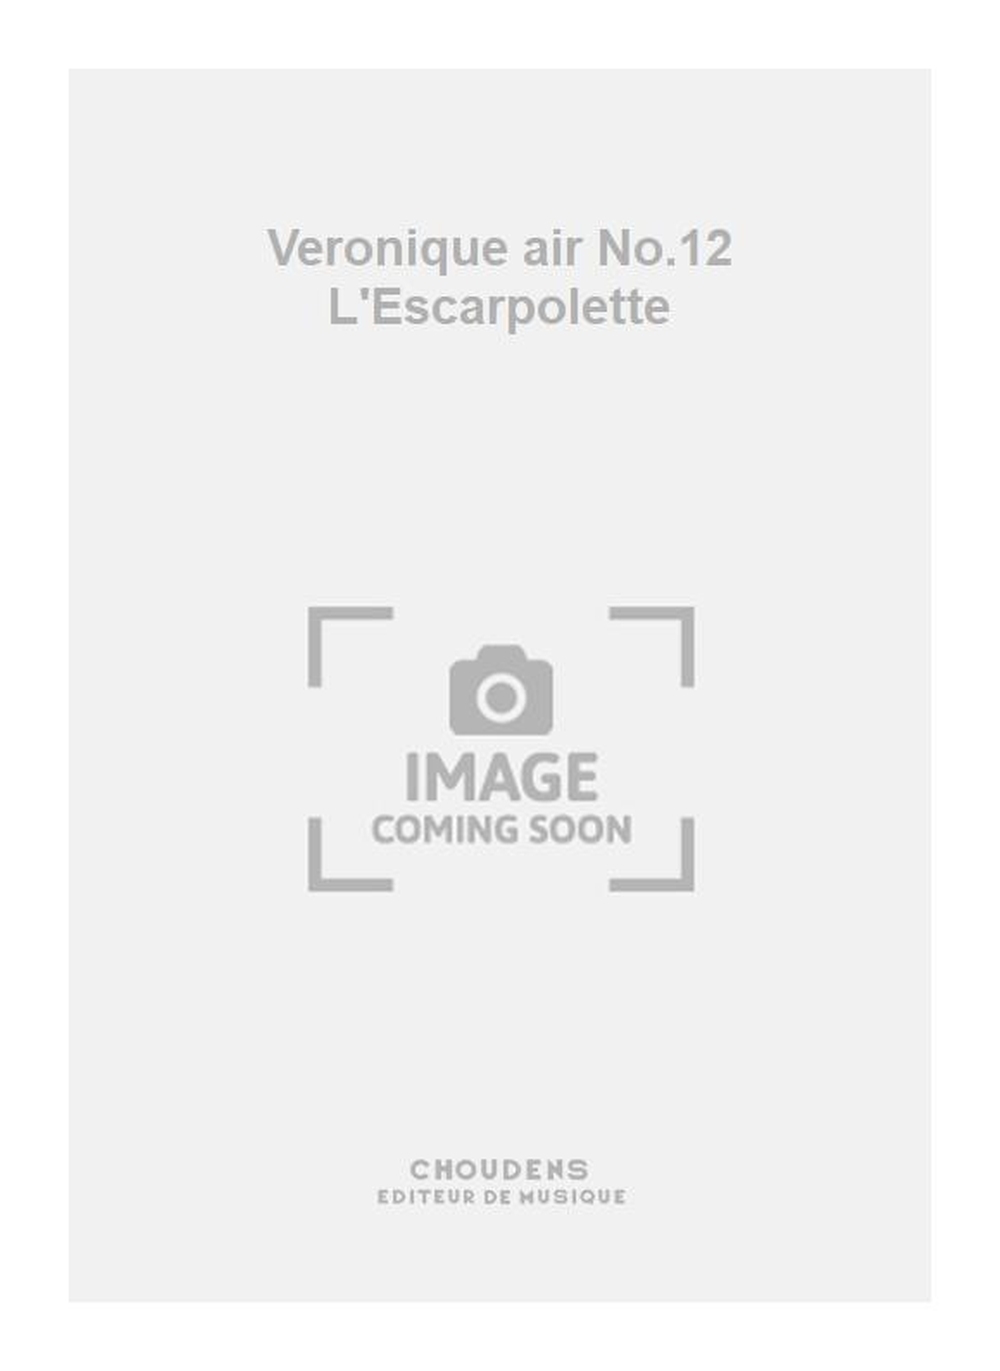 Messager: Veronique air No.12 L'Escarpolette